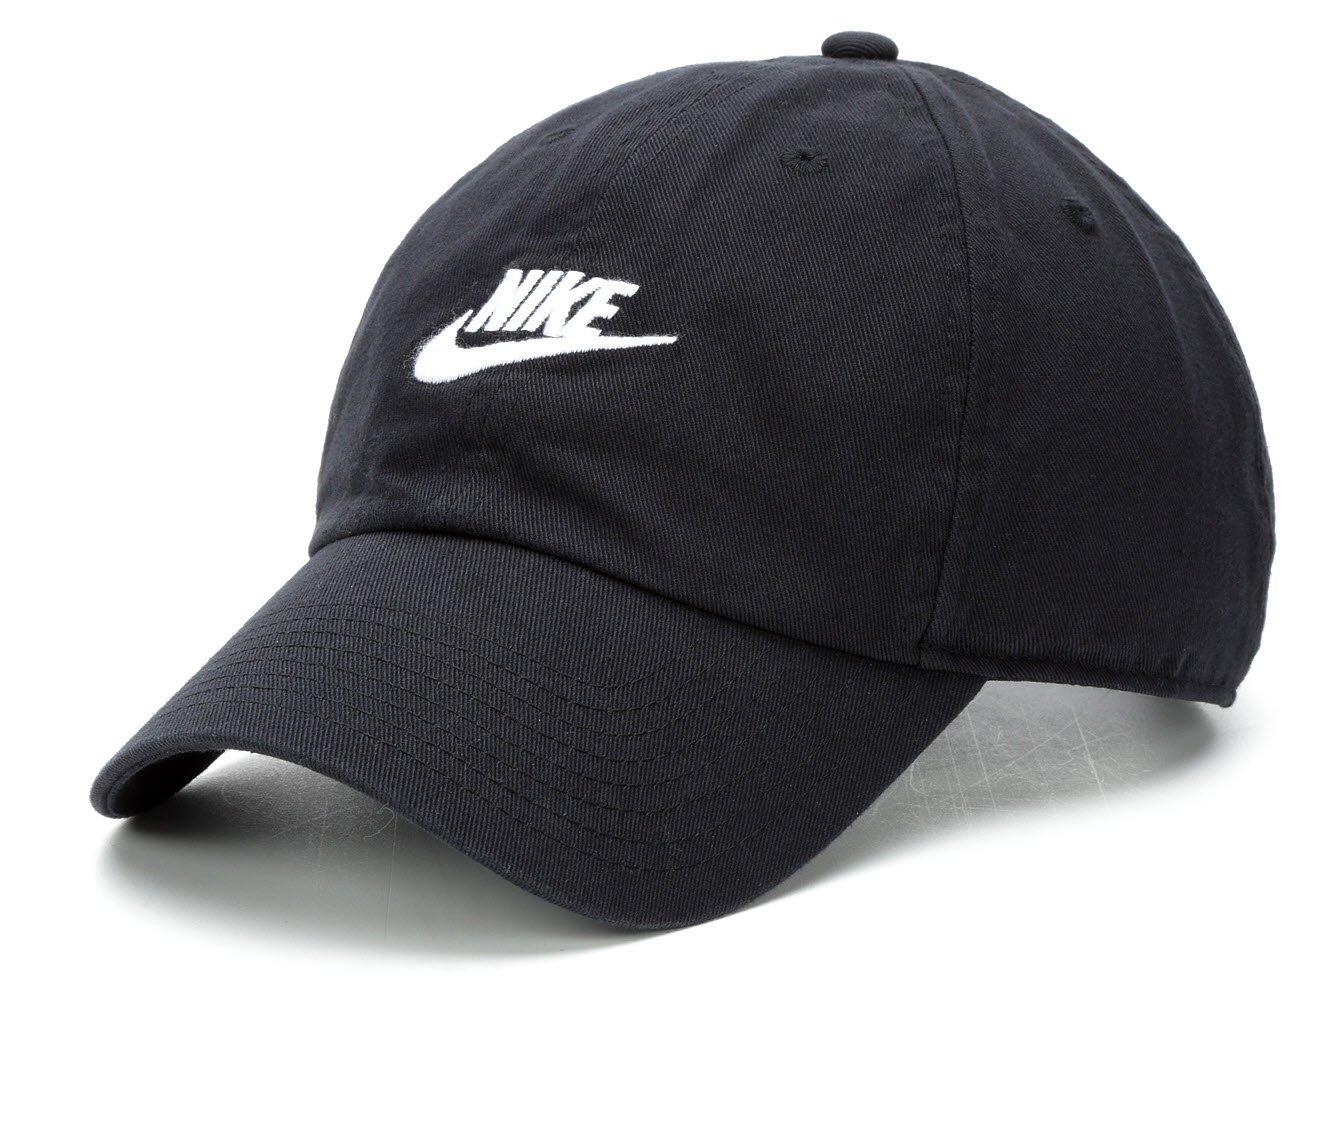 Men's Nike Futura Washed Baseball Cap - Black - Size One Size